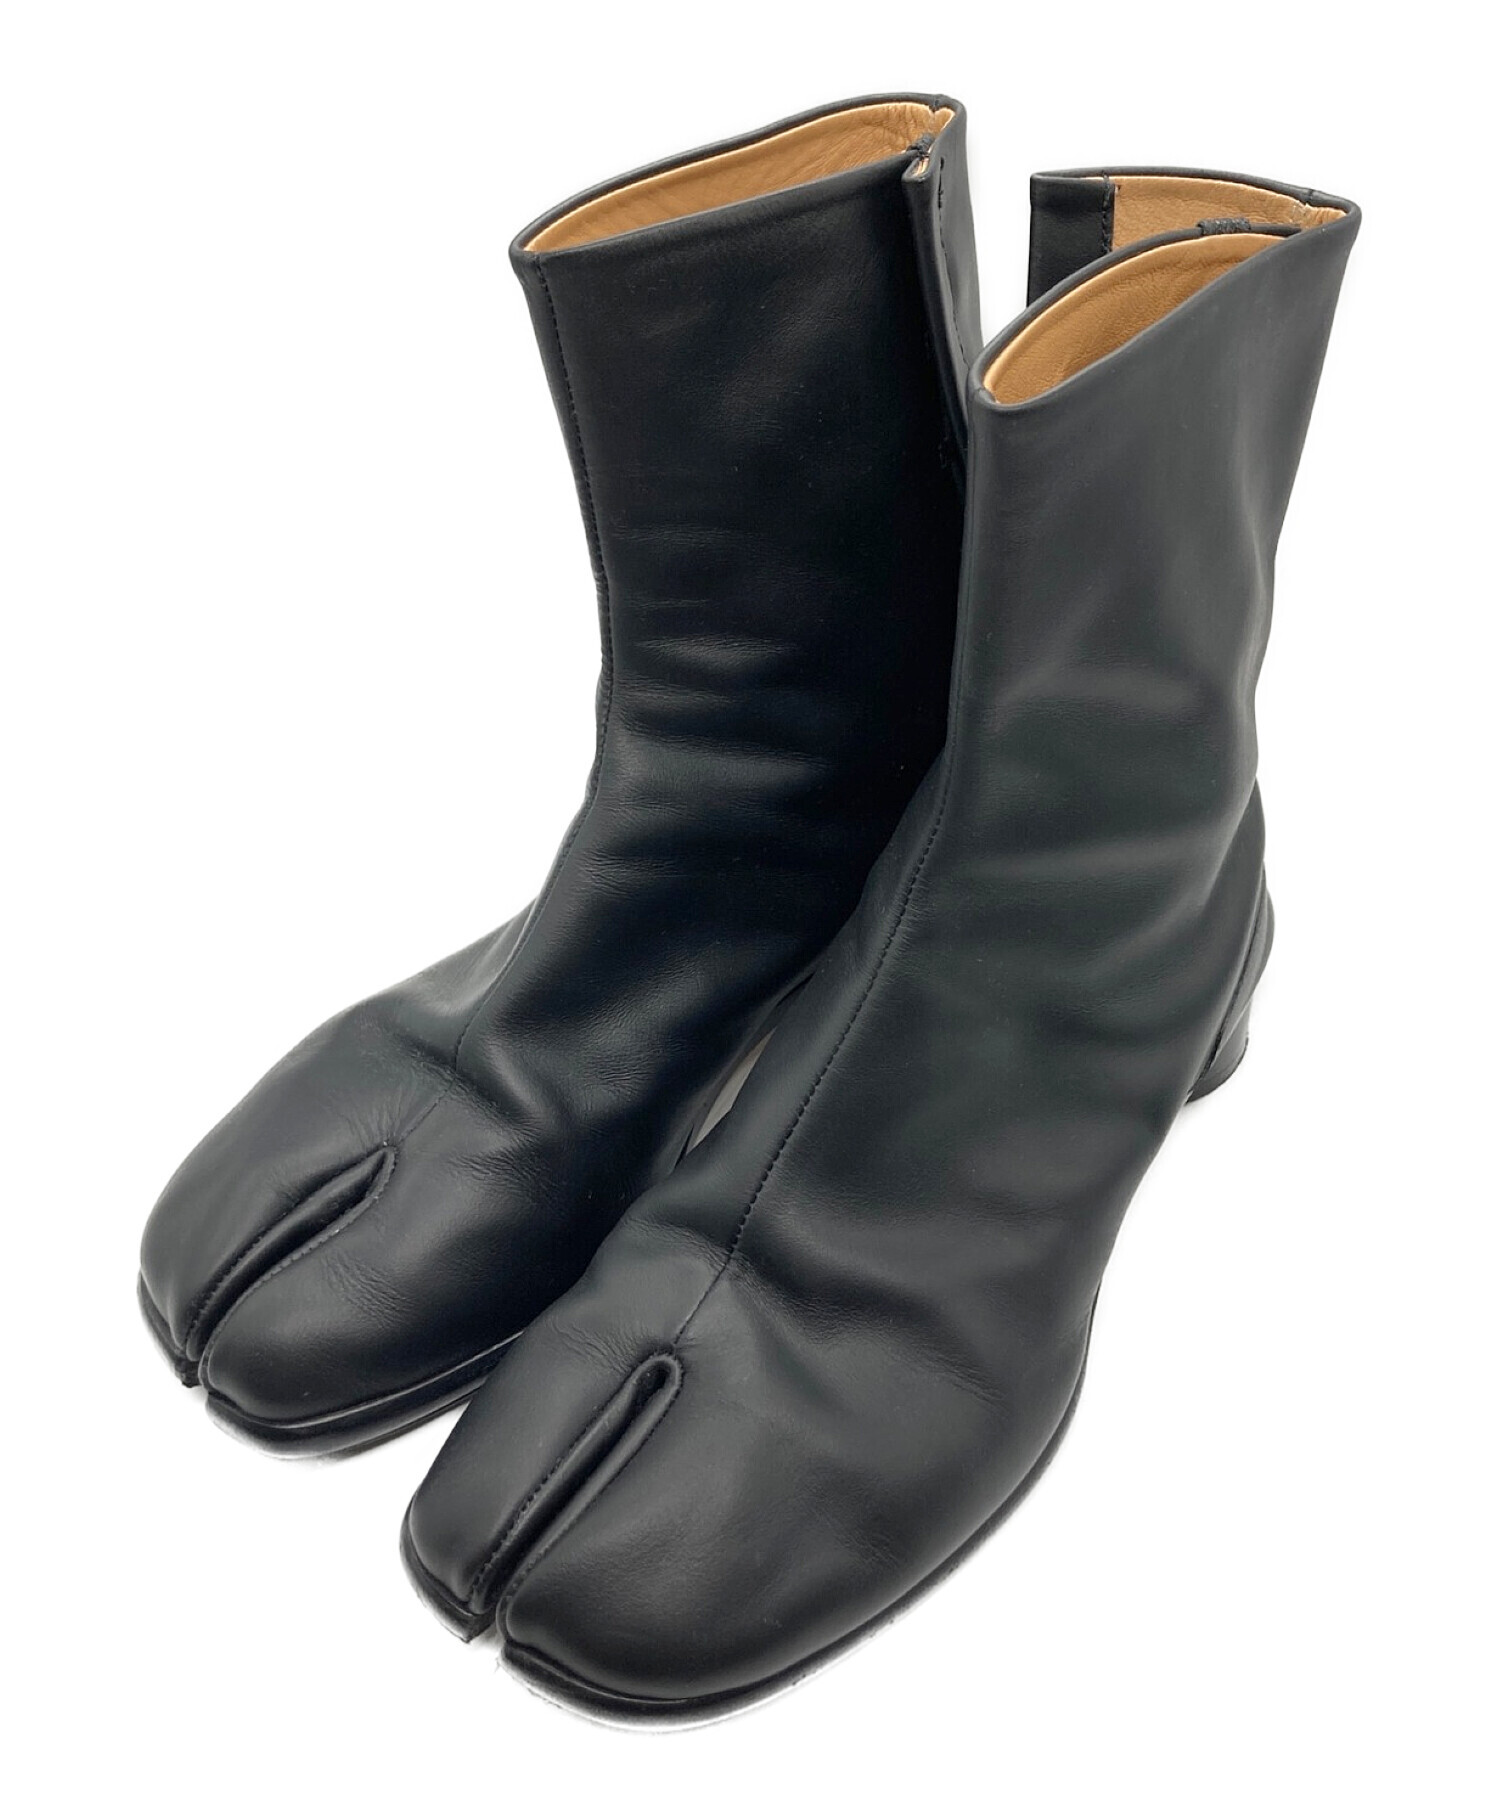 足袋Maison Margiela / Tabi boots サイズ 40 - lamavr.com